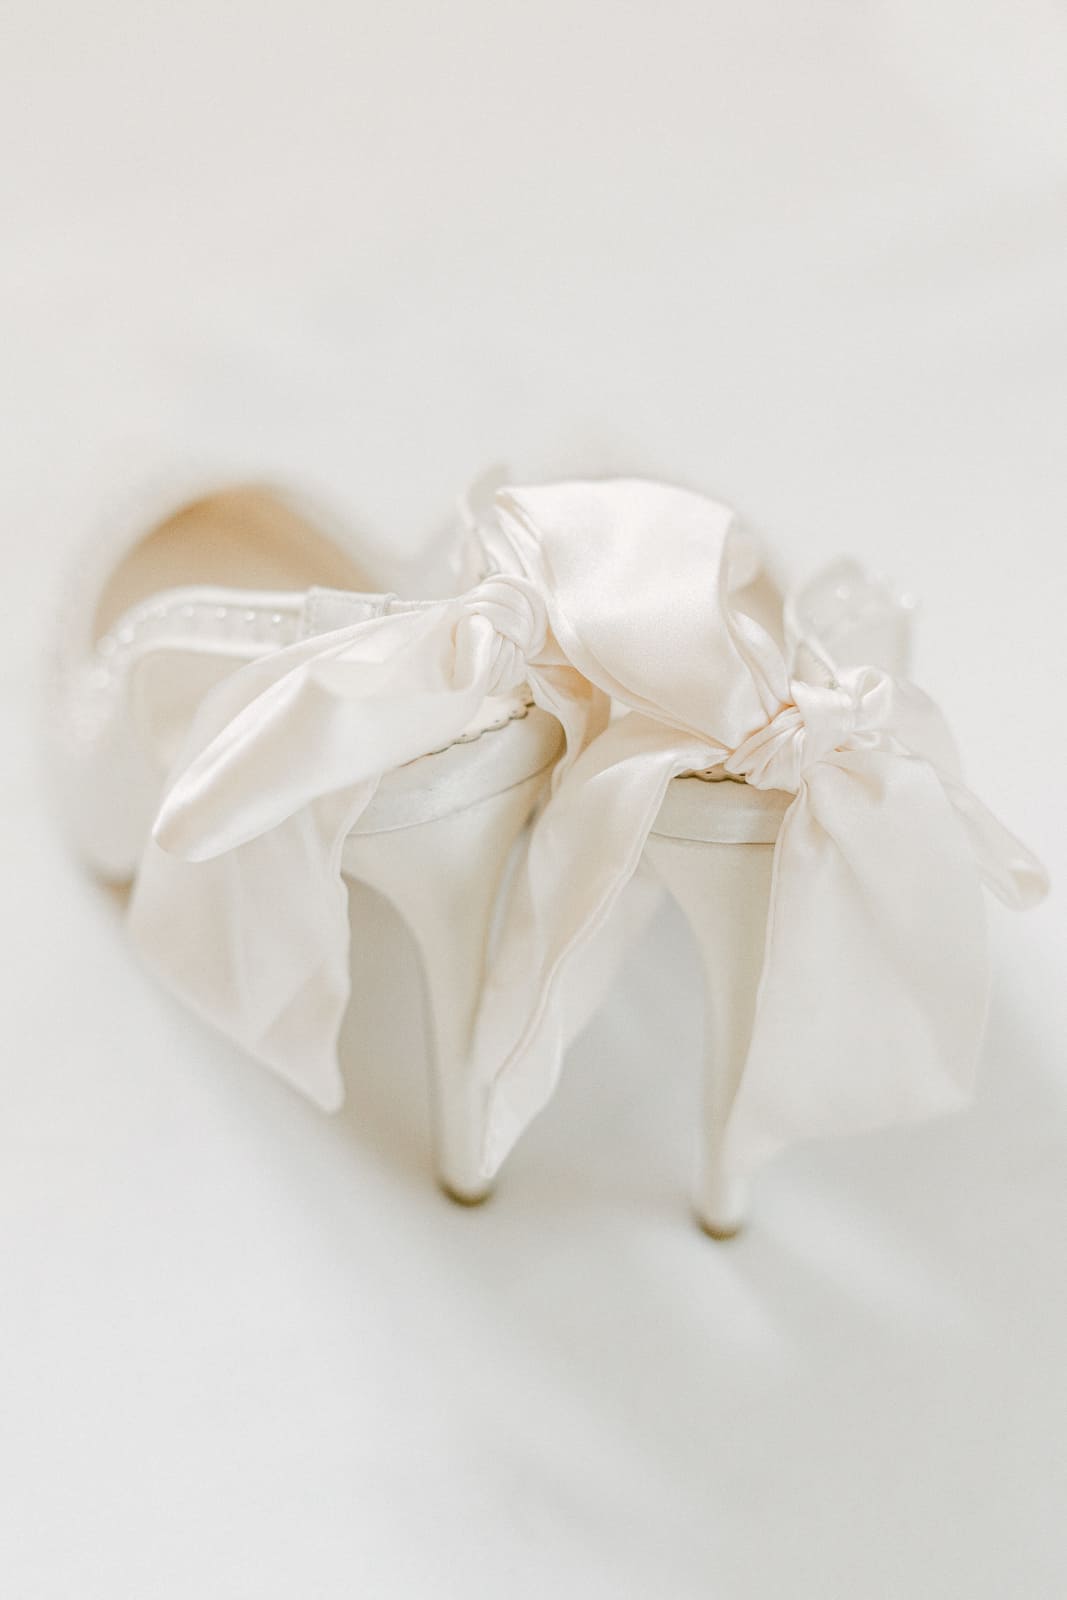 Bella Belle Schuhe Hochzeit weiße Schuhe mit Perlen und Schleifen